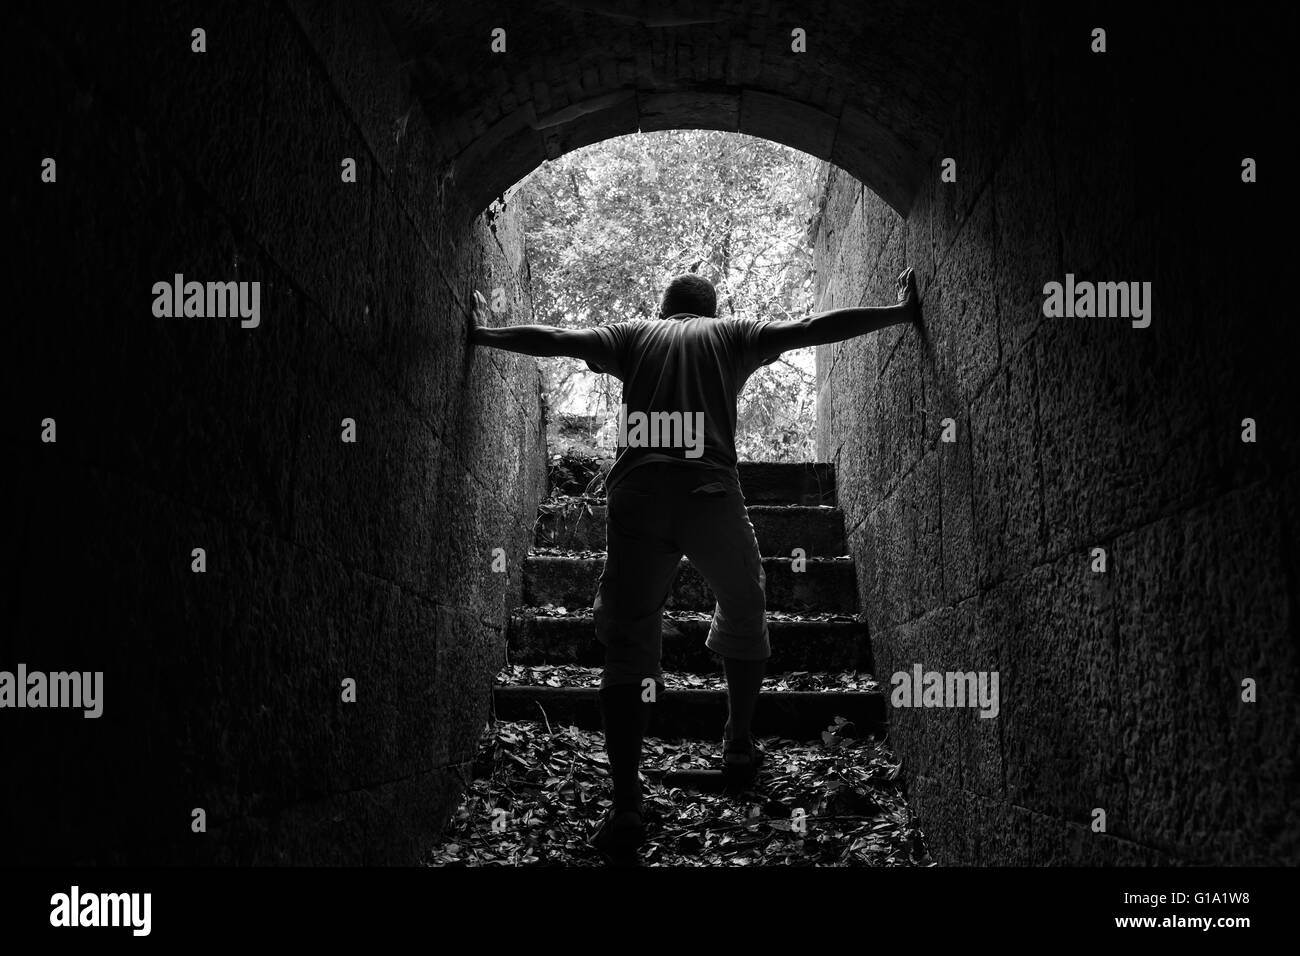 Homme fatigué s'éteint de pierre sombre tunnel avec extrémité rougeoyante, photo monochrome Banque D'Images